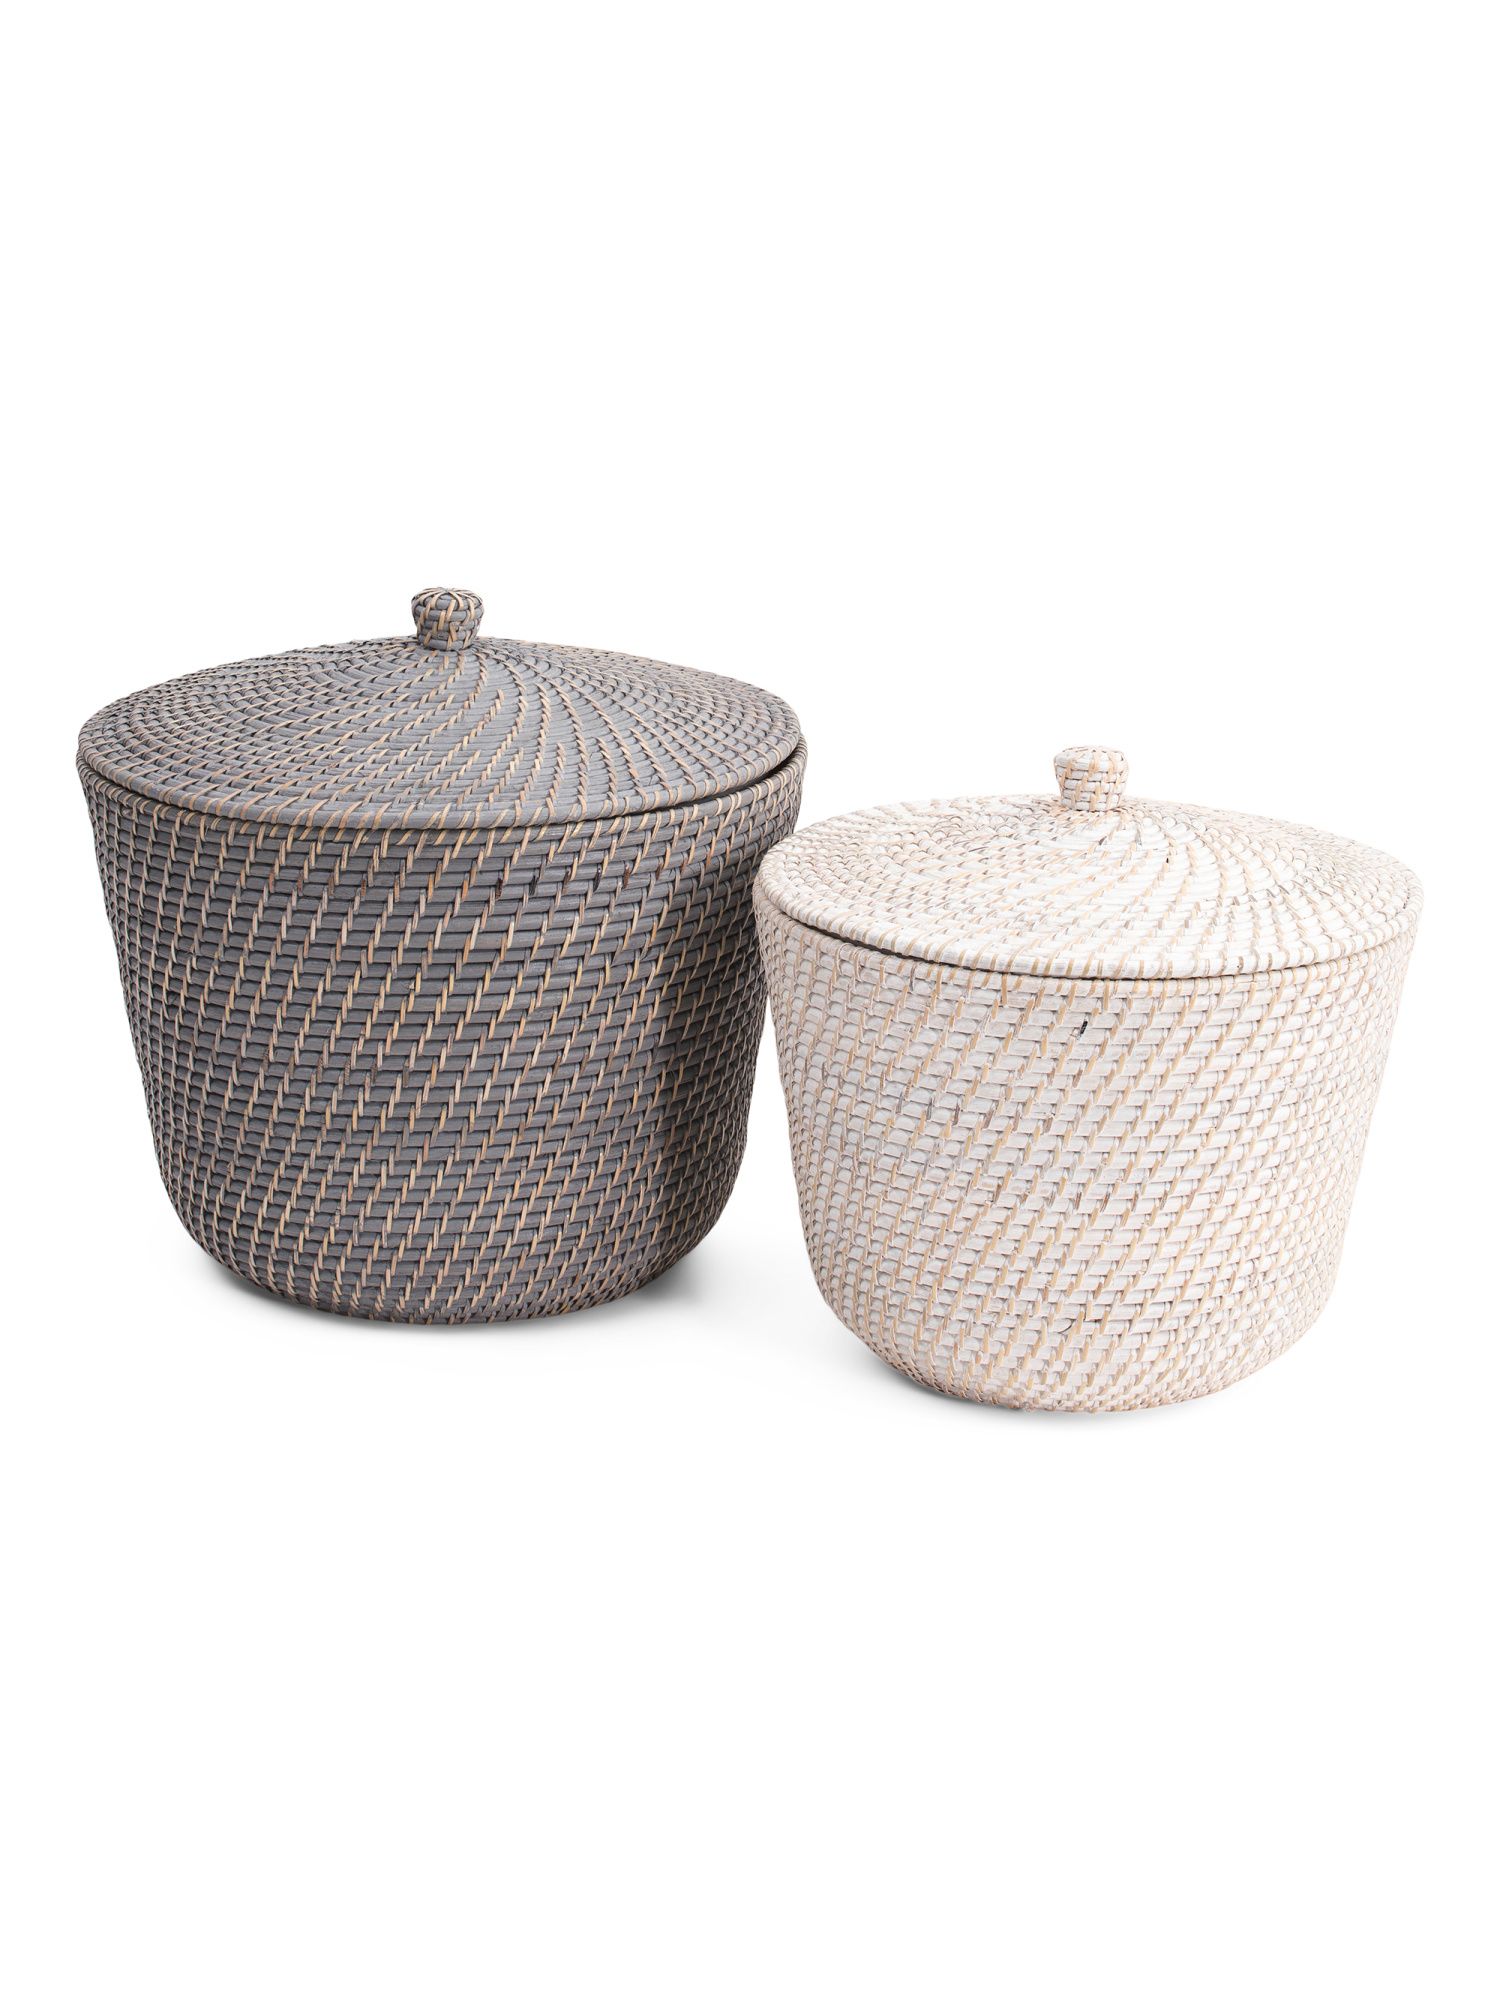 Rugaib Rattan Basket Collection | Marshalls